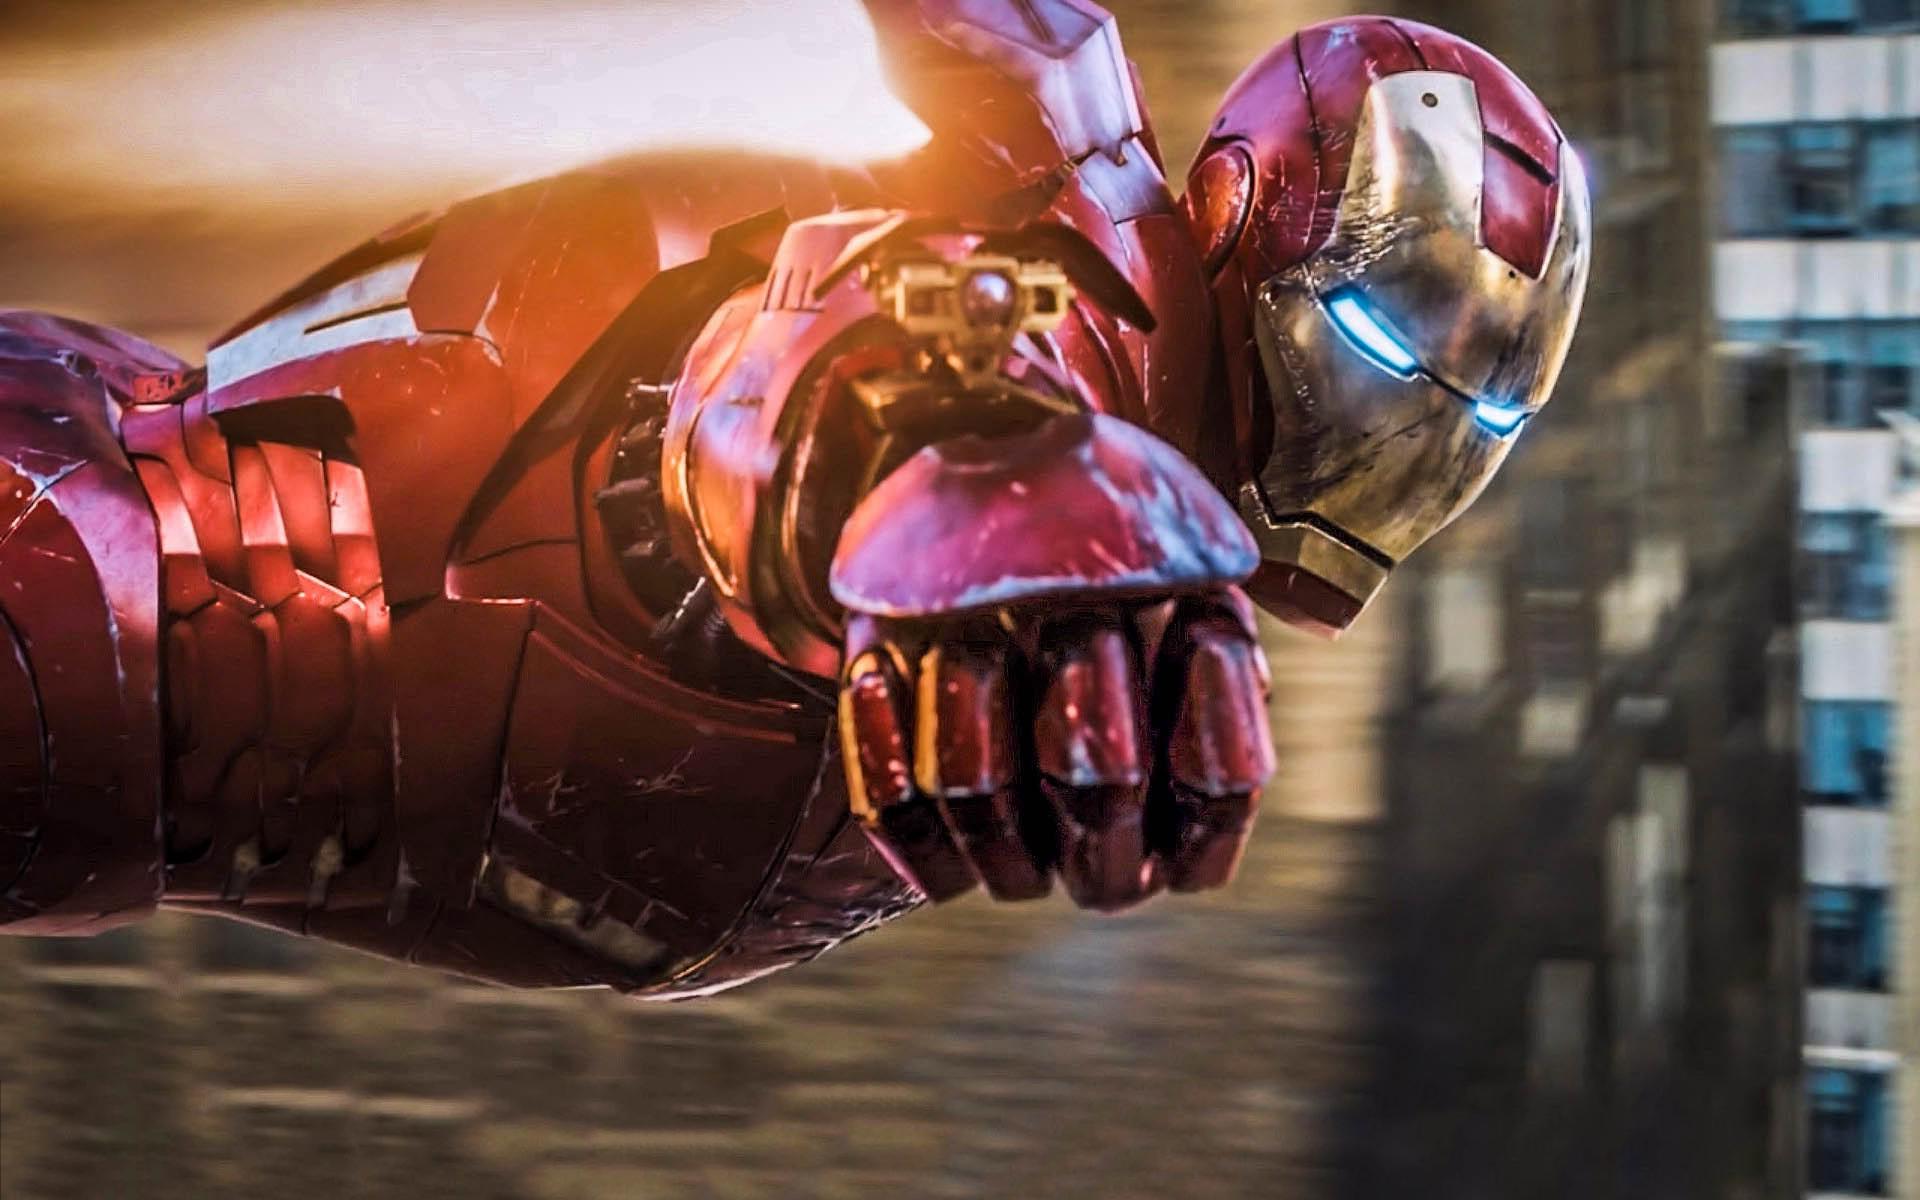 Để làm máy tính trở nên mới mẻ và thú vị, hình nền Iron Man 4k cho pc mới nhất là lựa chọn hoàn hảo. Bộ sưu tập này được cập nhật với các hình ảnh đặc trưng nhất của Iron Man. Đừng bỏ lỡ cơ hội để tận hưởng những trận chiến hoành tráng của siêu anh hùng Iron Man.